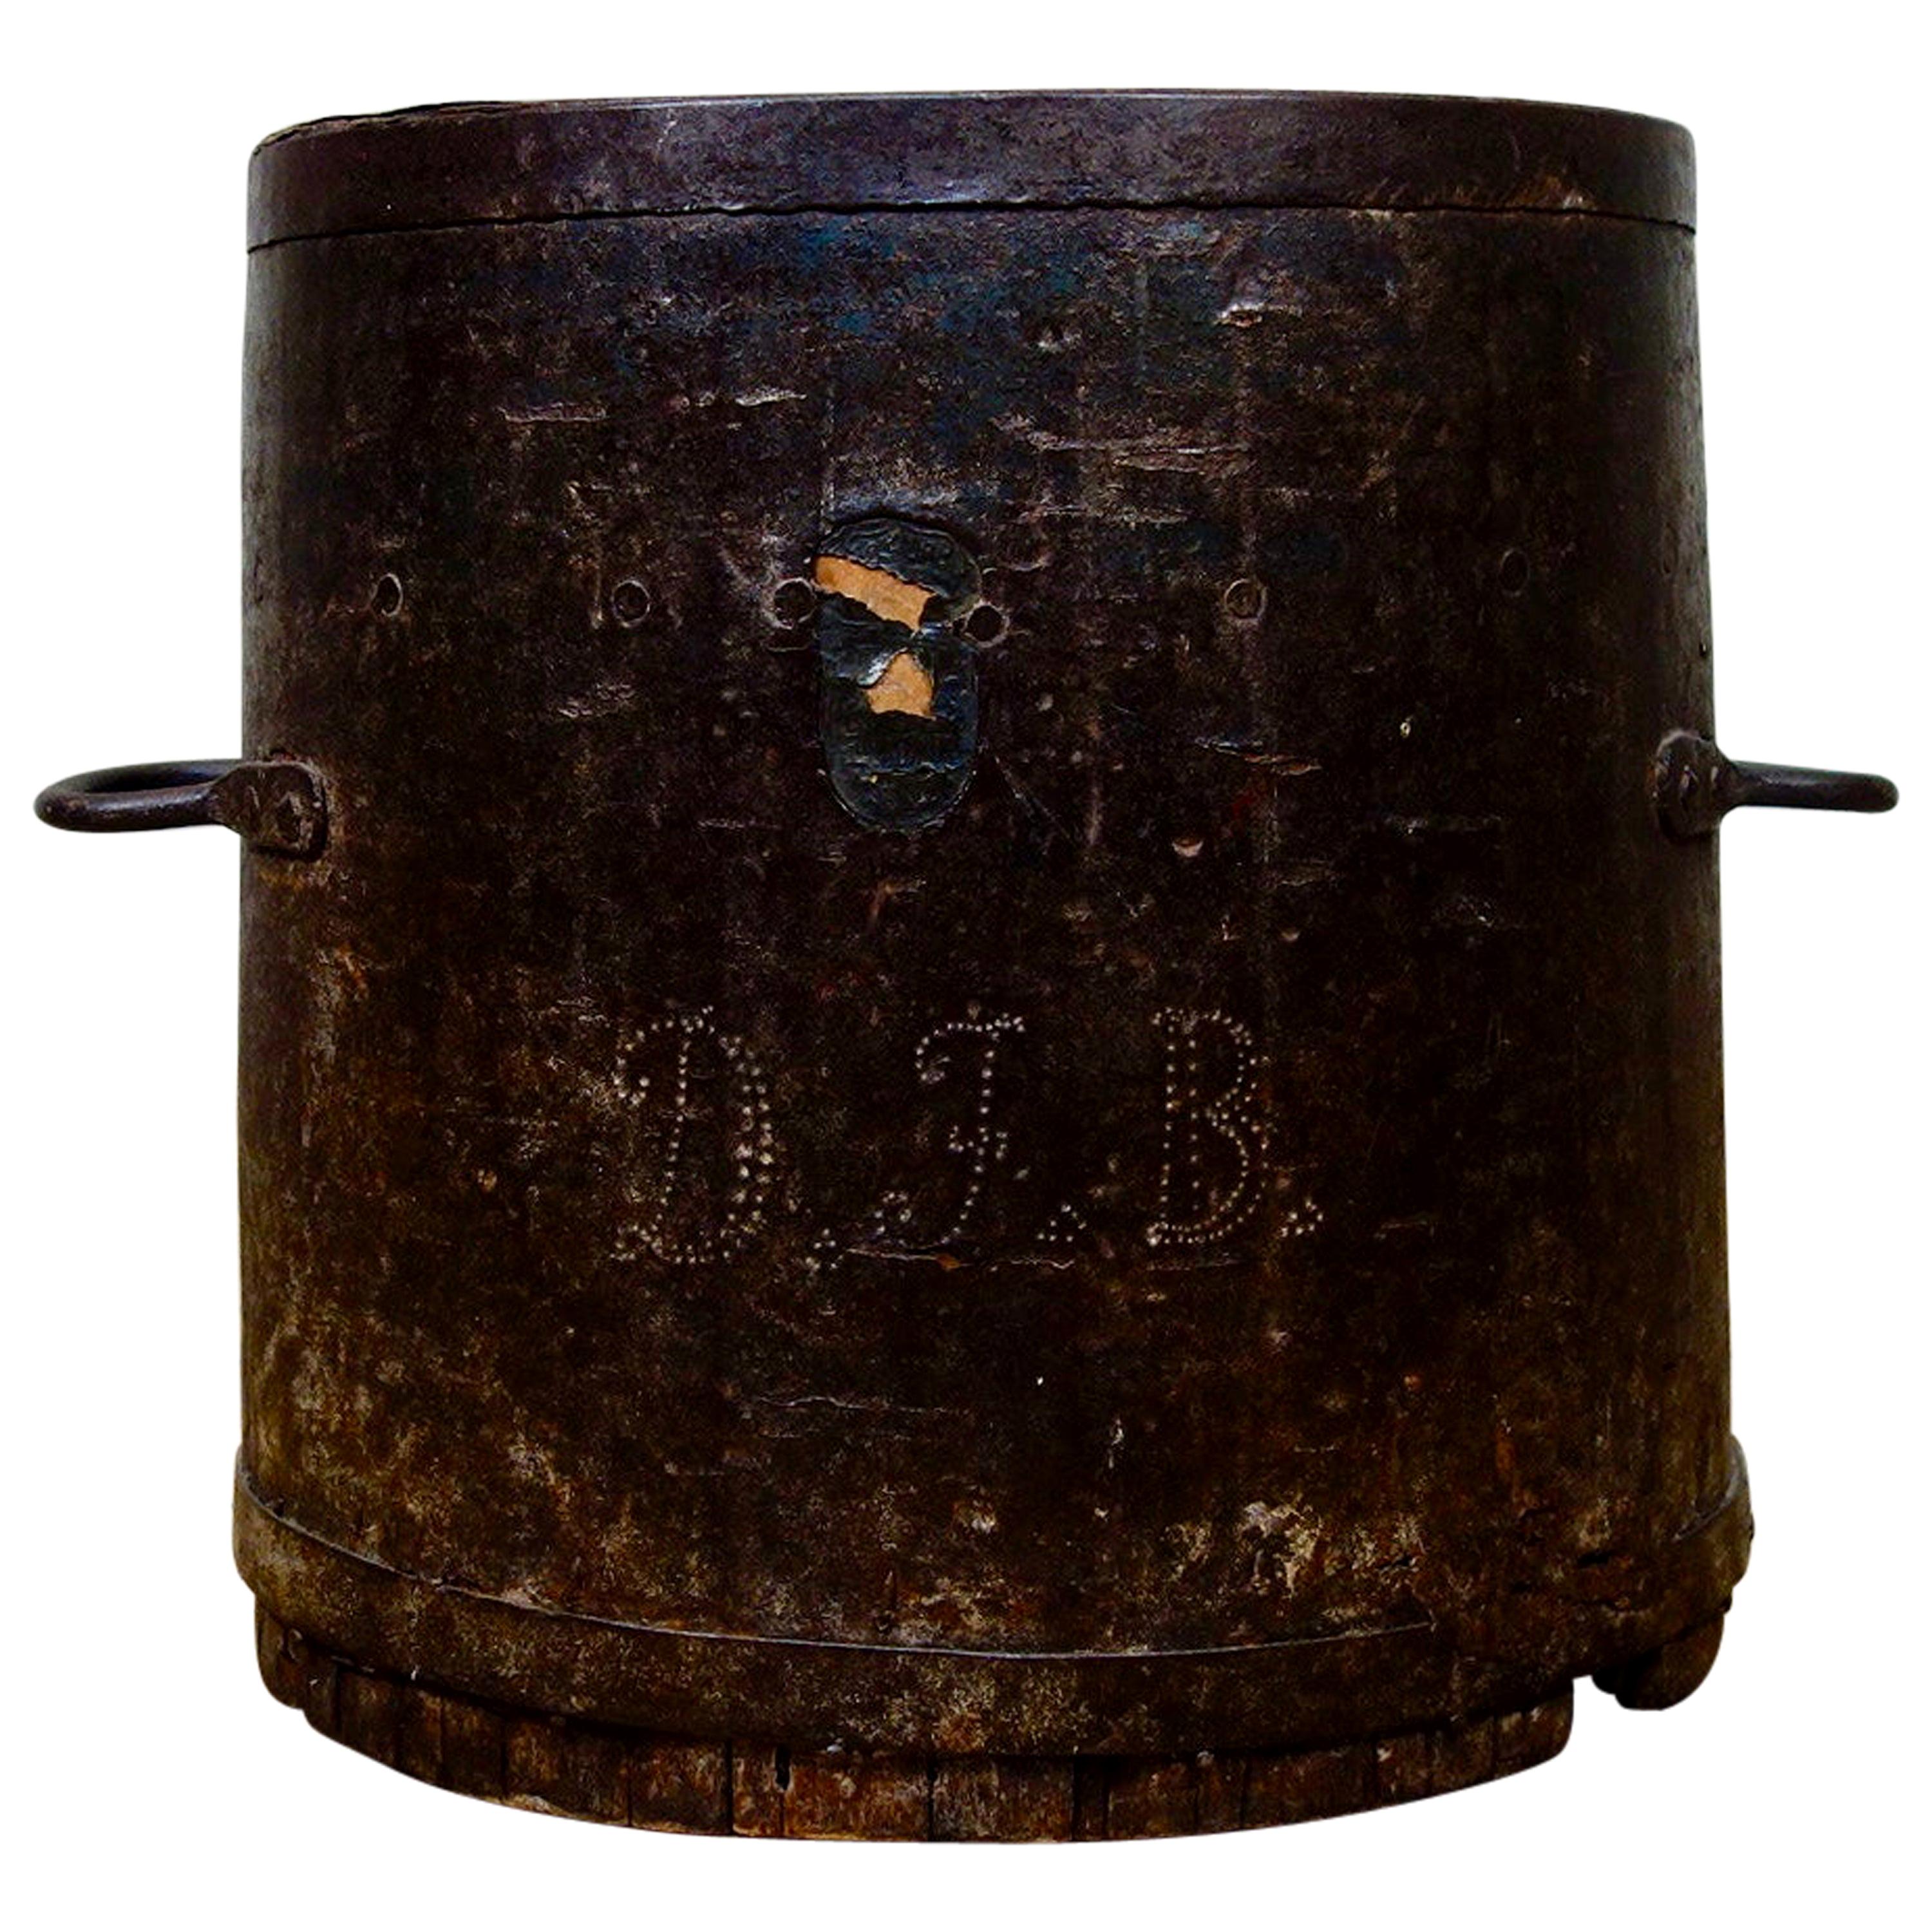 Primitive 19th Century Bushel Barrel, Measure Vessel